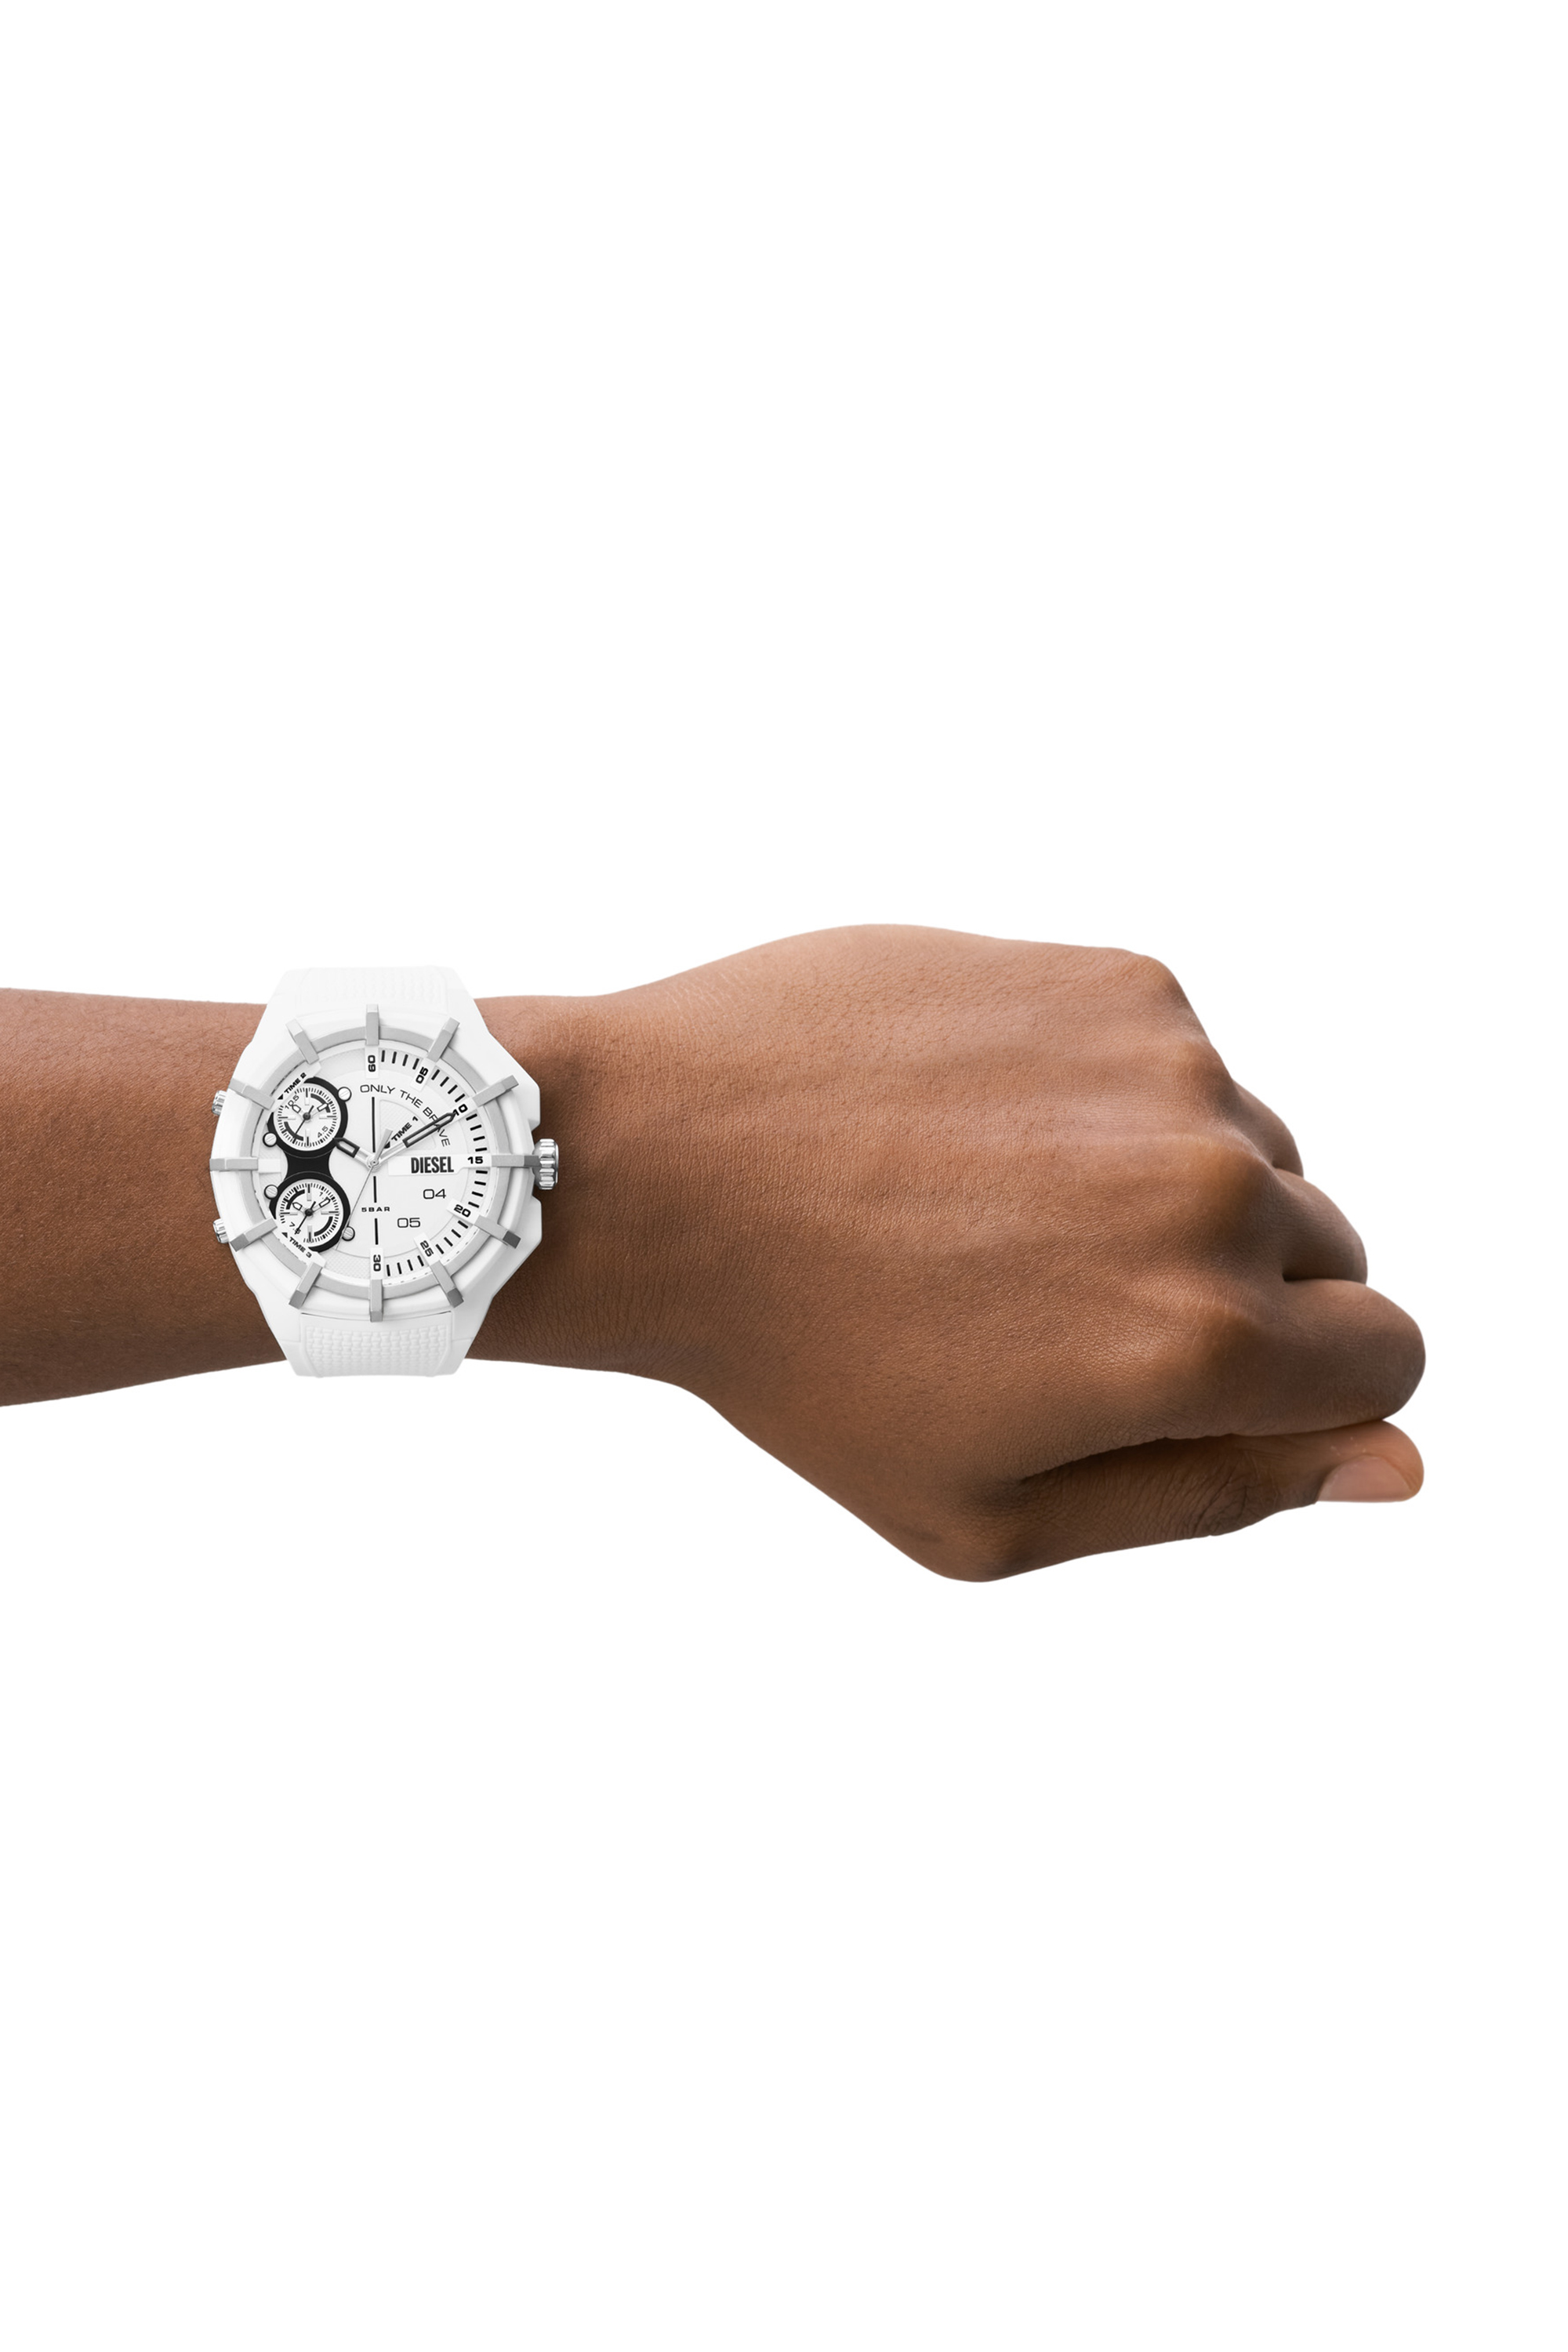 Auf welche Faktoren Sie als Kunde vor dem Kauf bei Armbanduhr braun damen Acht geben sollten